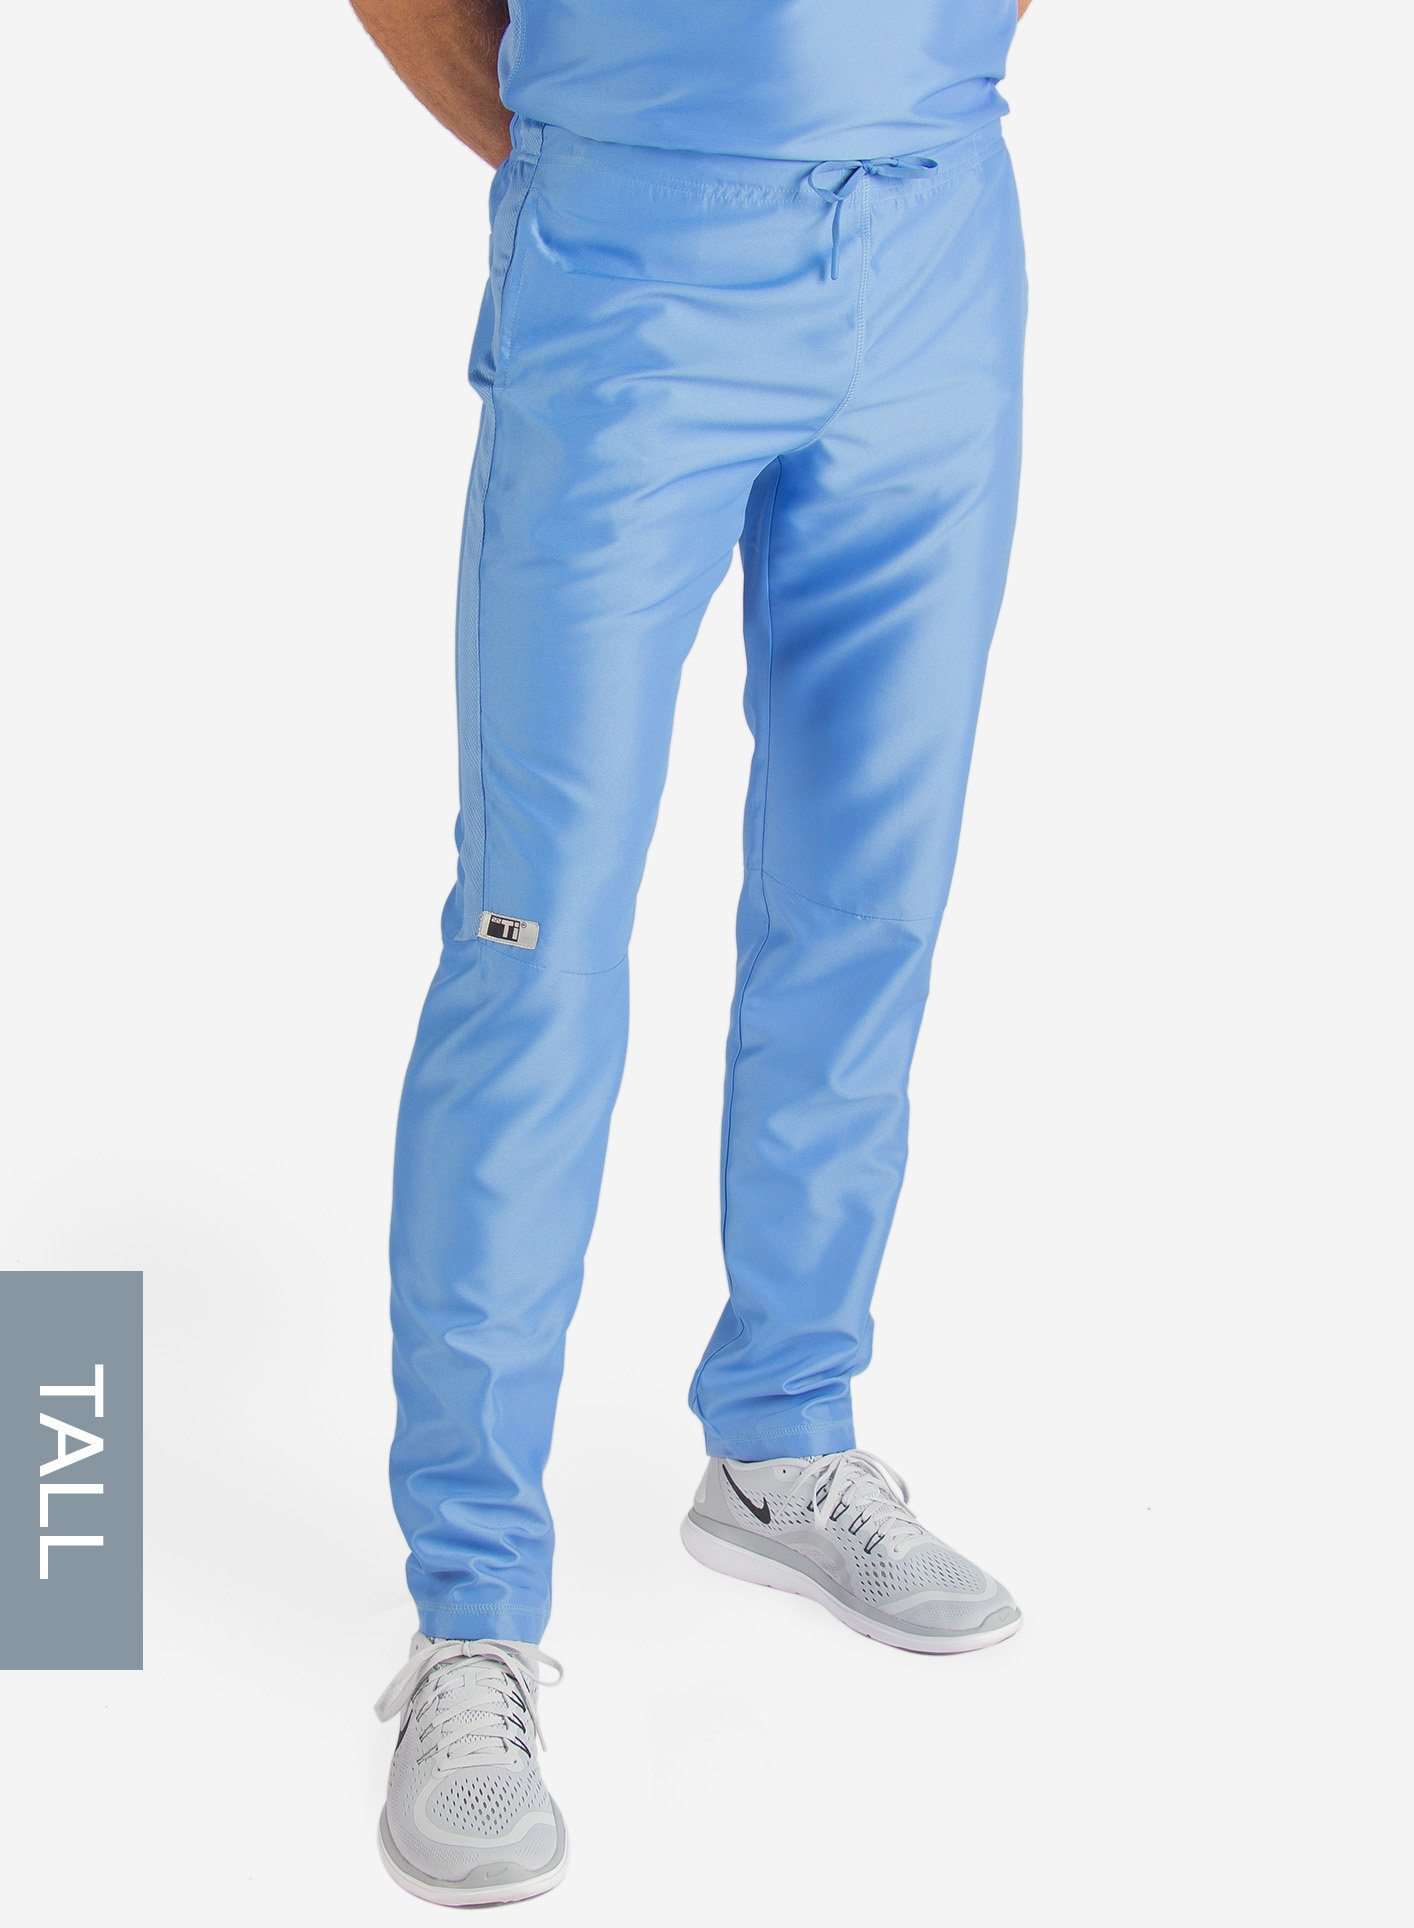 Men's Tall Slim Fit Scrub Pants in ceil-blue